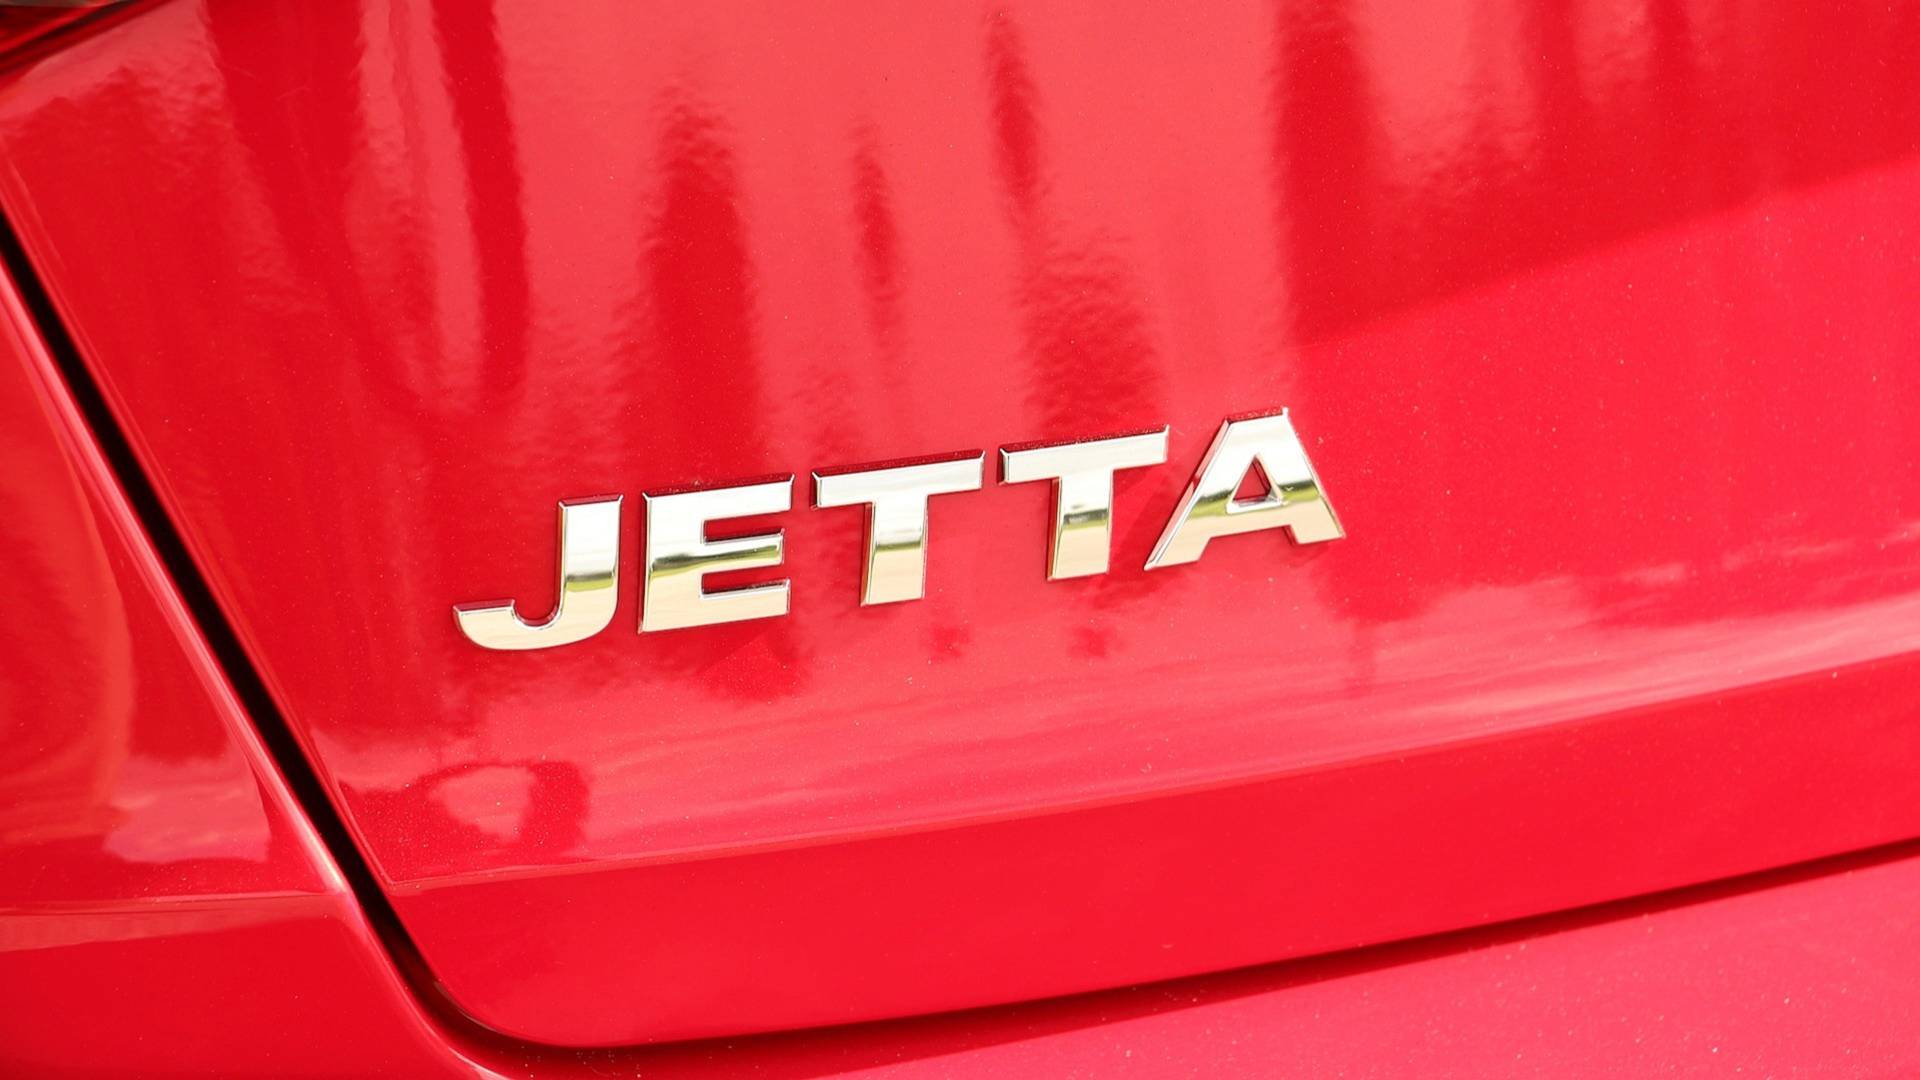 2019-volkswagen-jetta-review-17.jpg